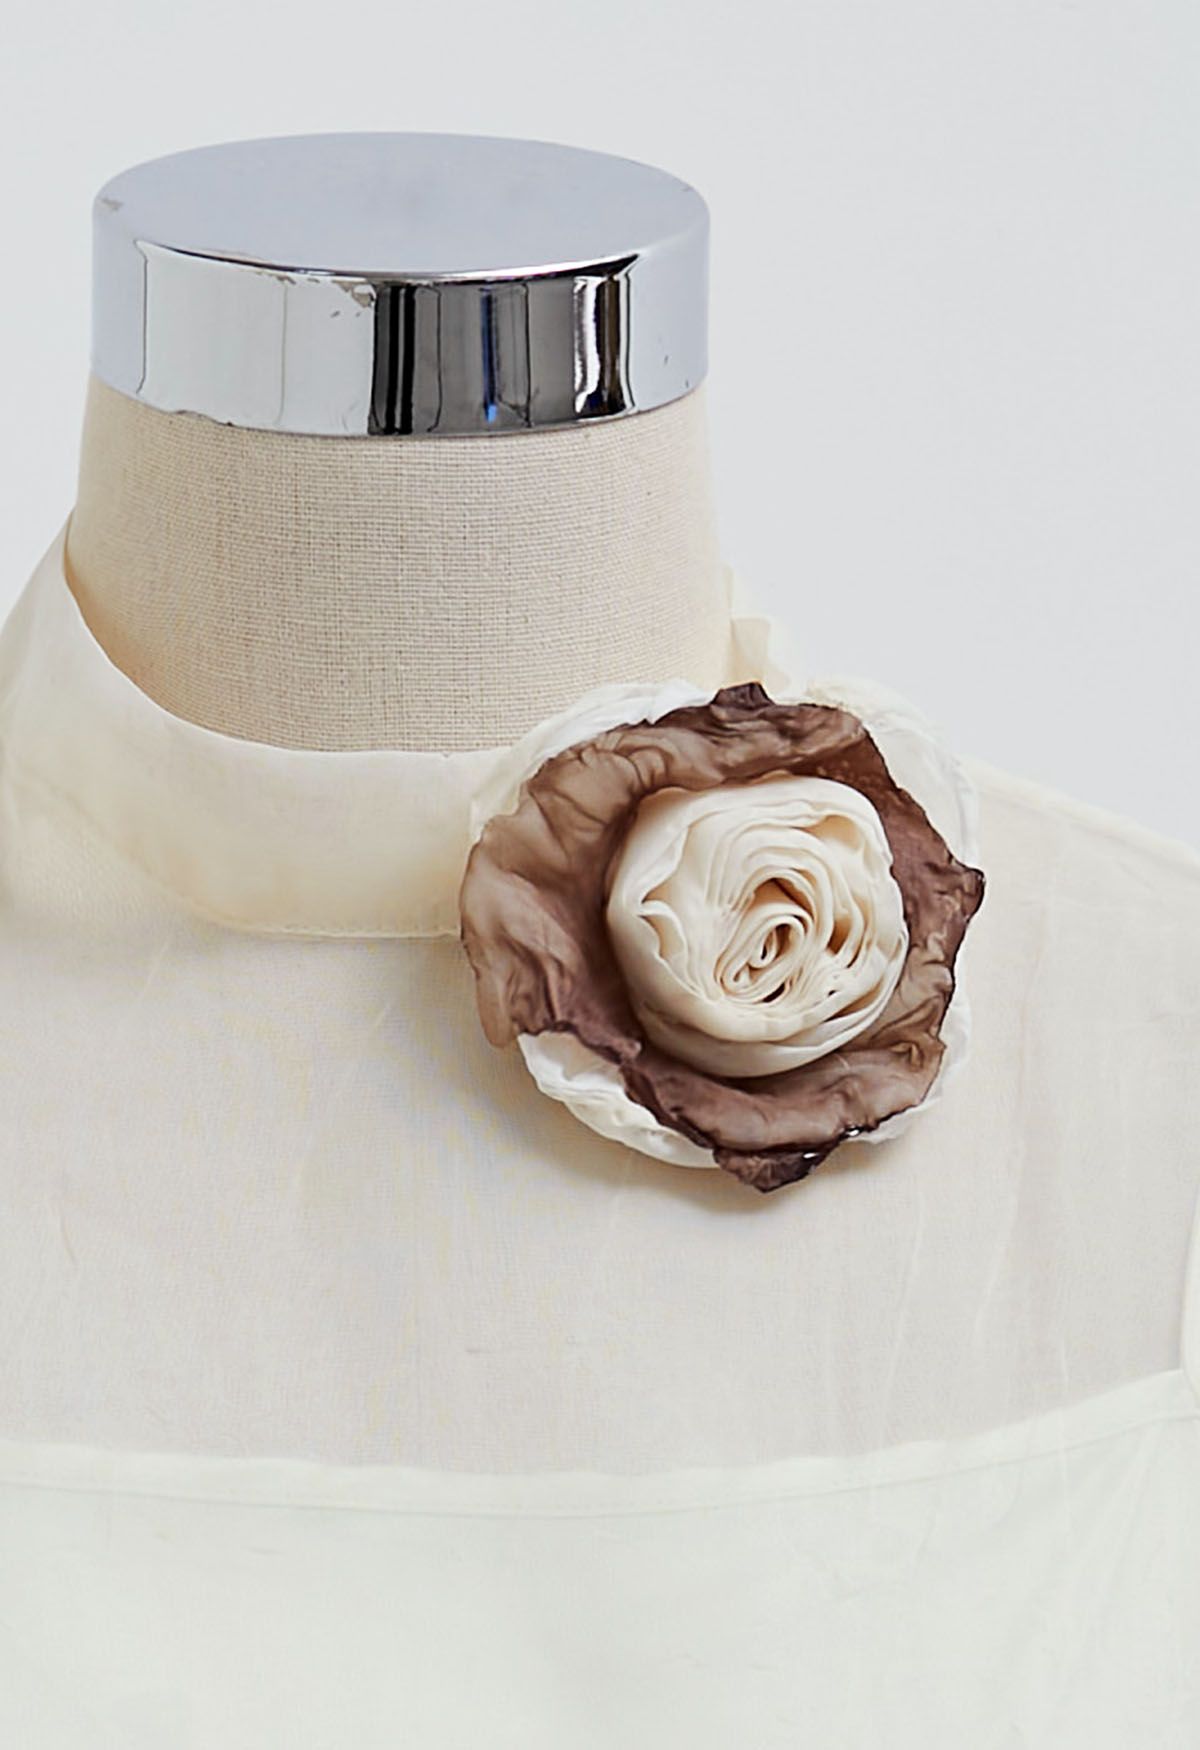 Top transparente con textura y mangas abullonadas con broche de rosas en color crema